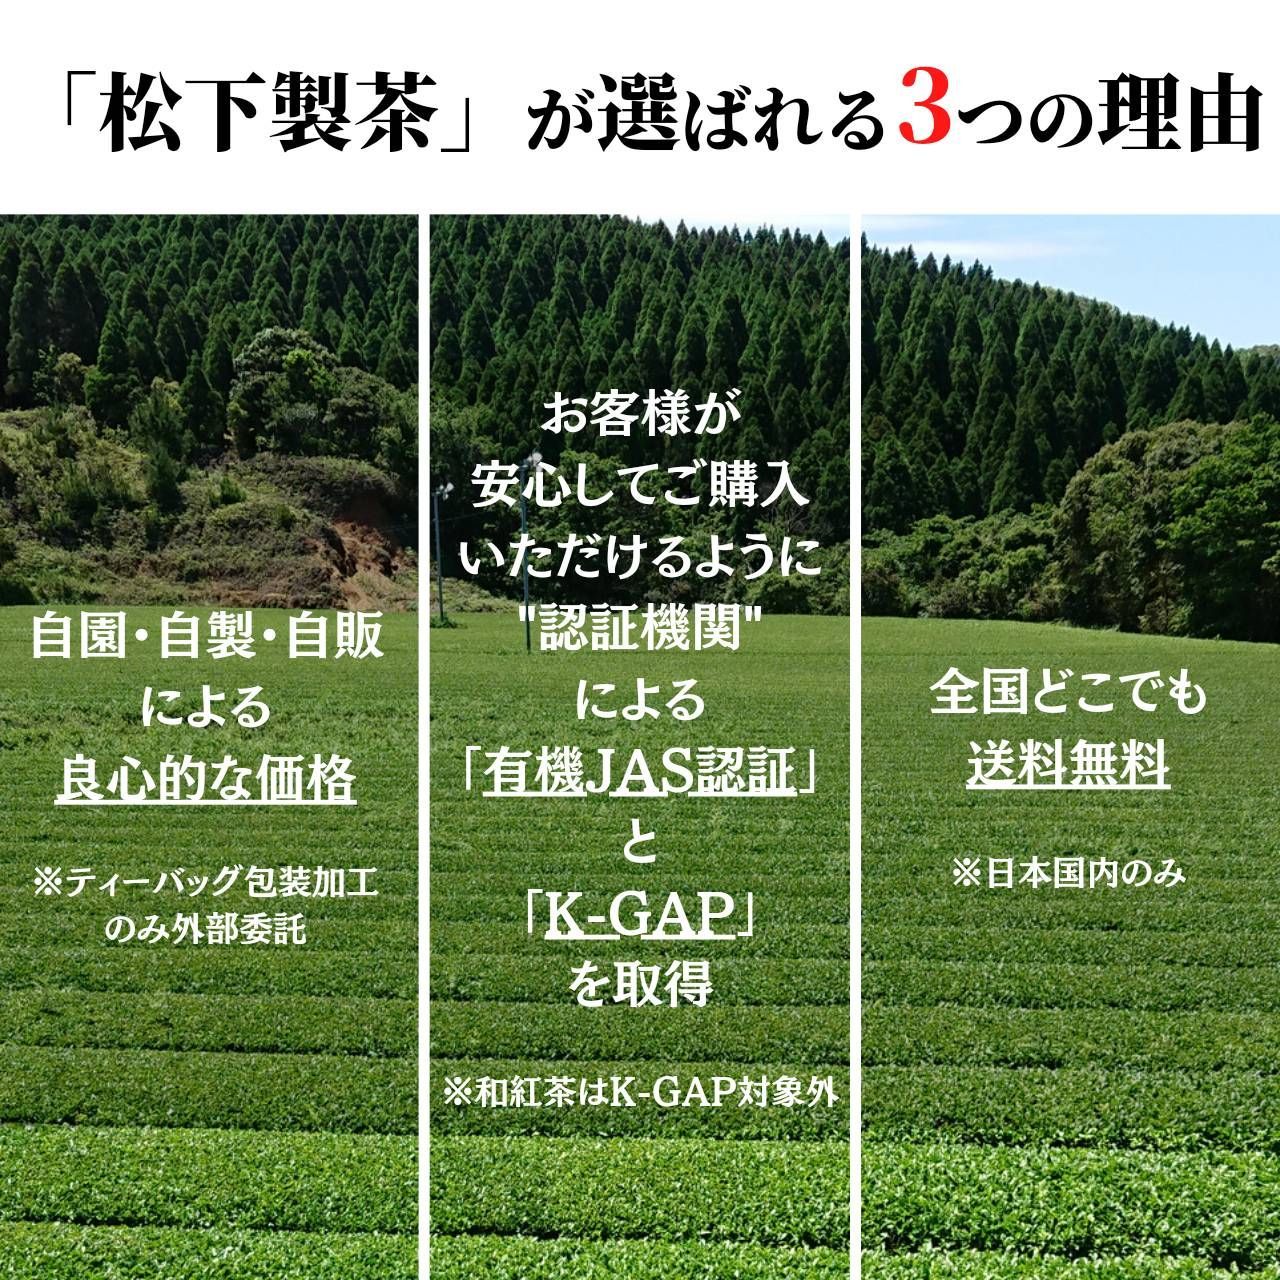 【2022年産/希少品種】種子島の有機緑茶『くりたわせ』 茶葉 100g-2